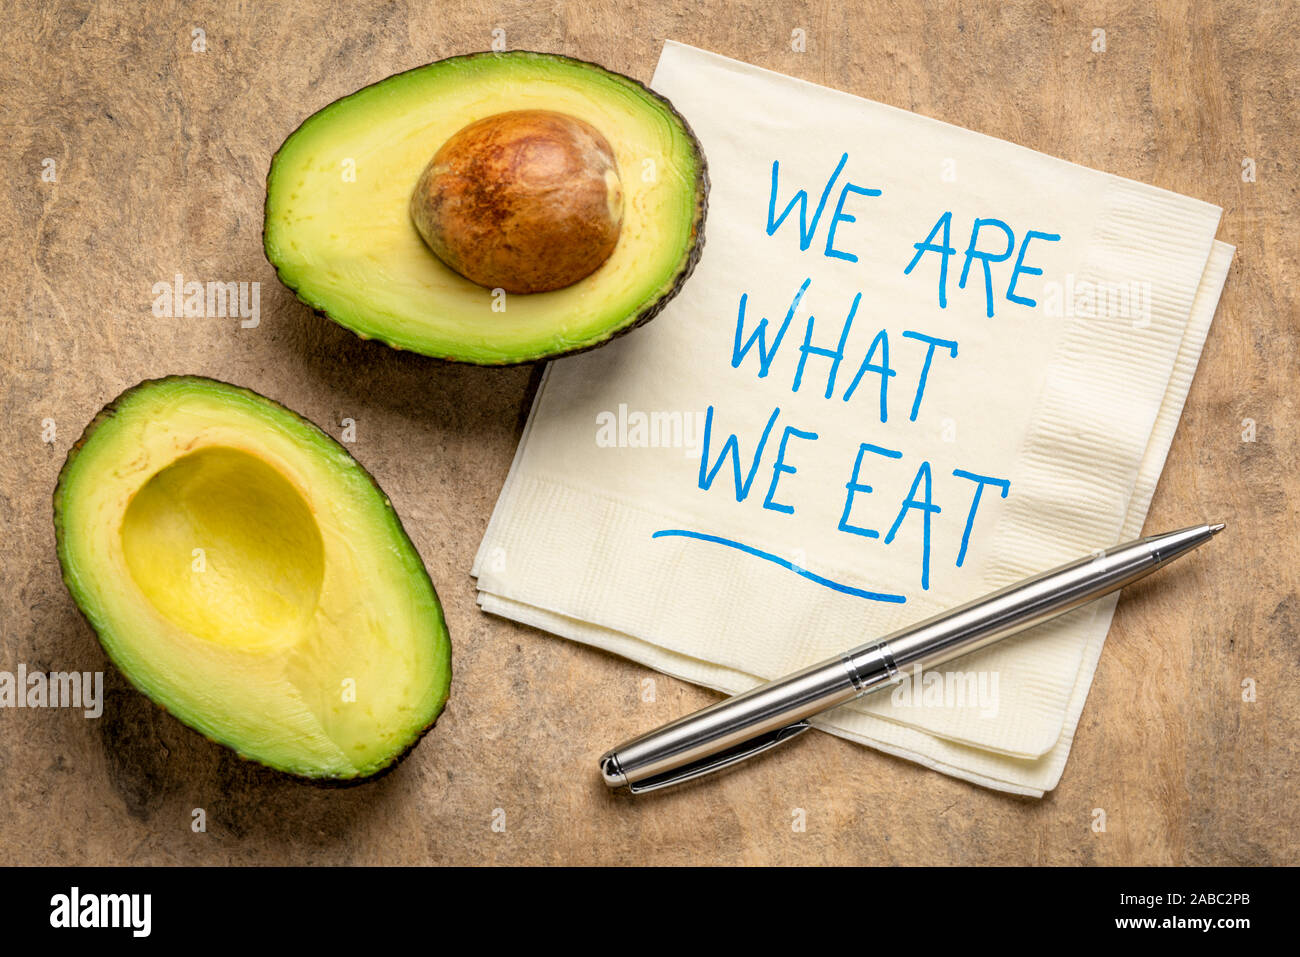 Wir sind, was wir essen. Handschrift auf eine Serviette mit einem Schnitt Avocado - gesunde Lebensweise und Ernährung Konzept. Stockfoto